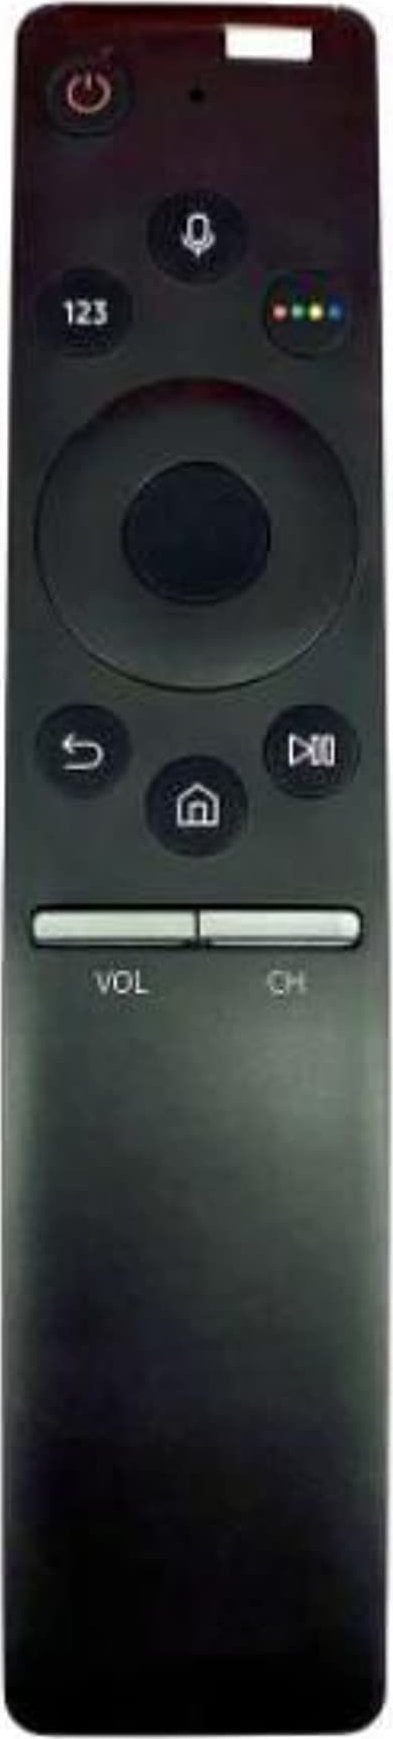 Telecomenzi - Telecomandă Samsung Remote Commander TM1750A Telecomandă TV